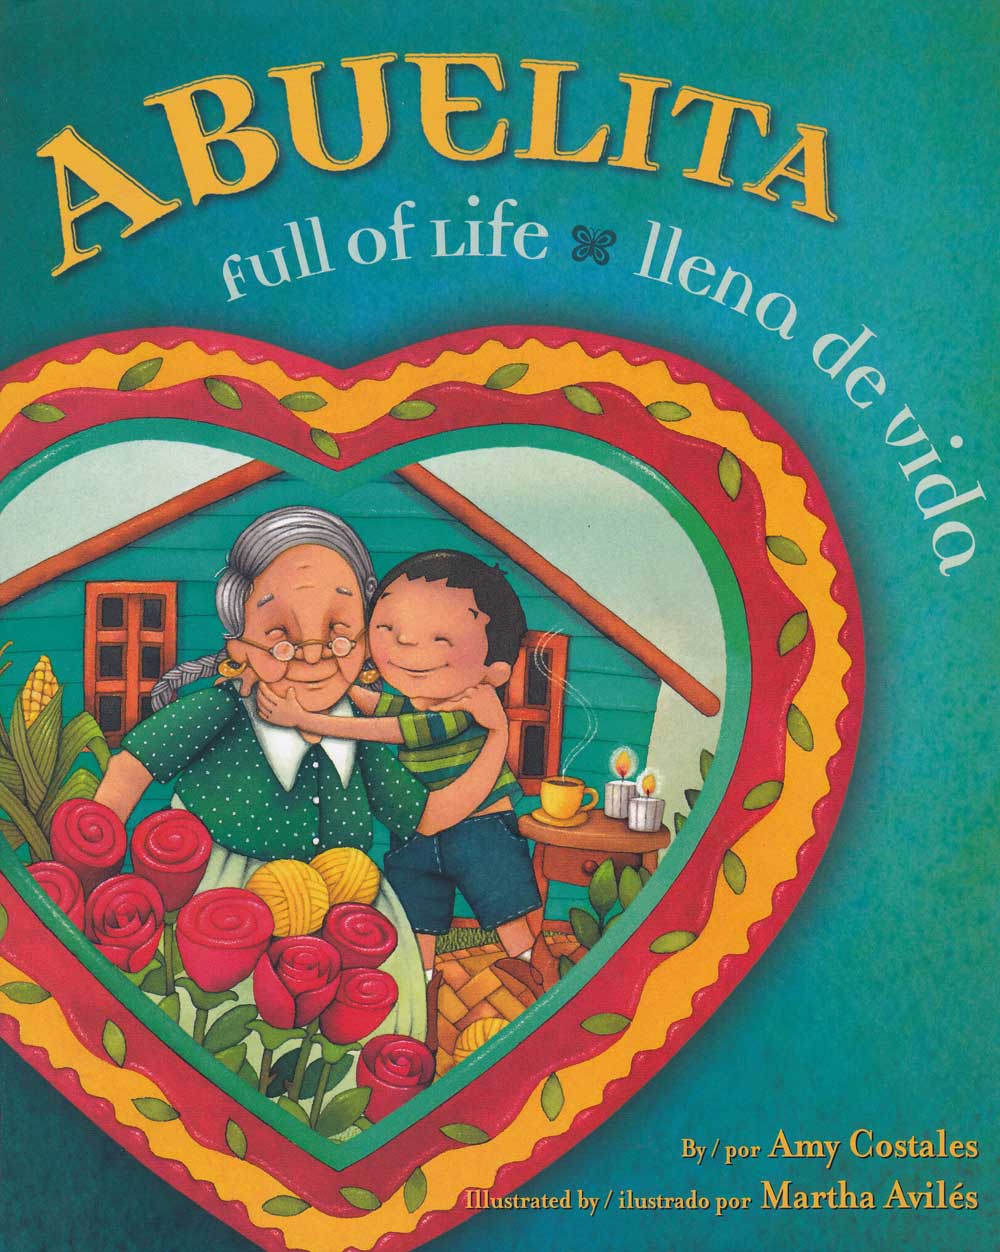 Abuelita llena de vida - Abuelita Full of Life, Del Sol Books